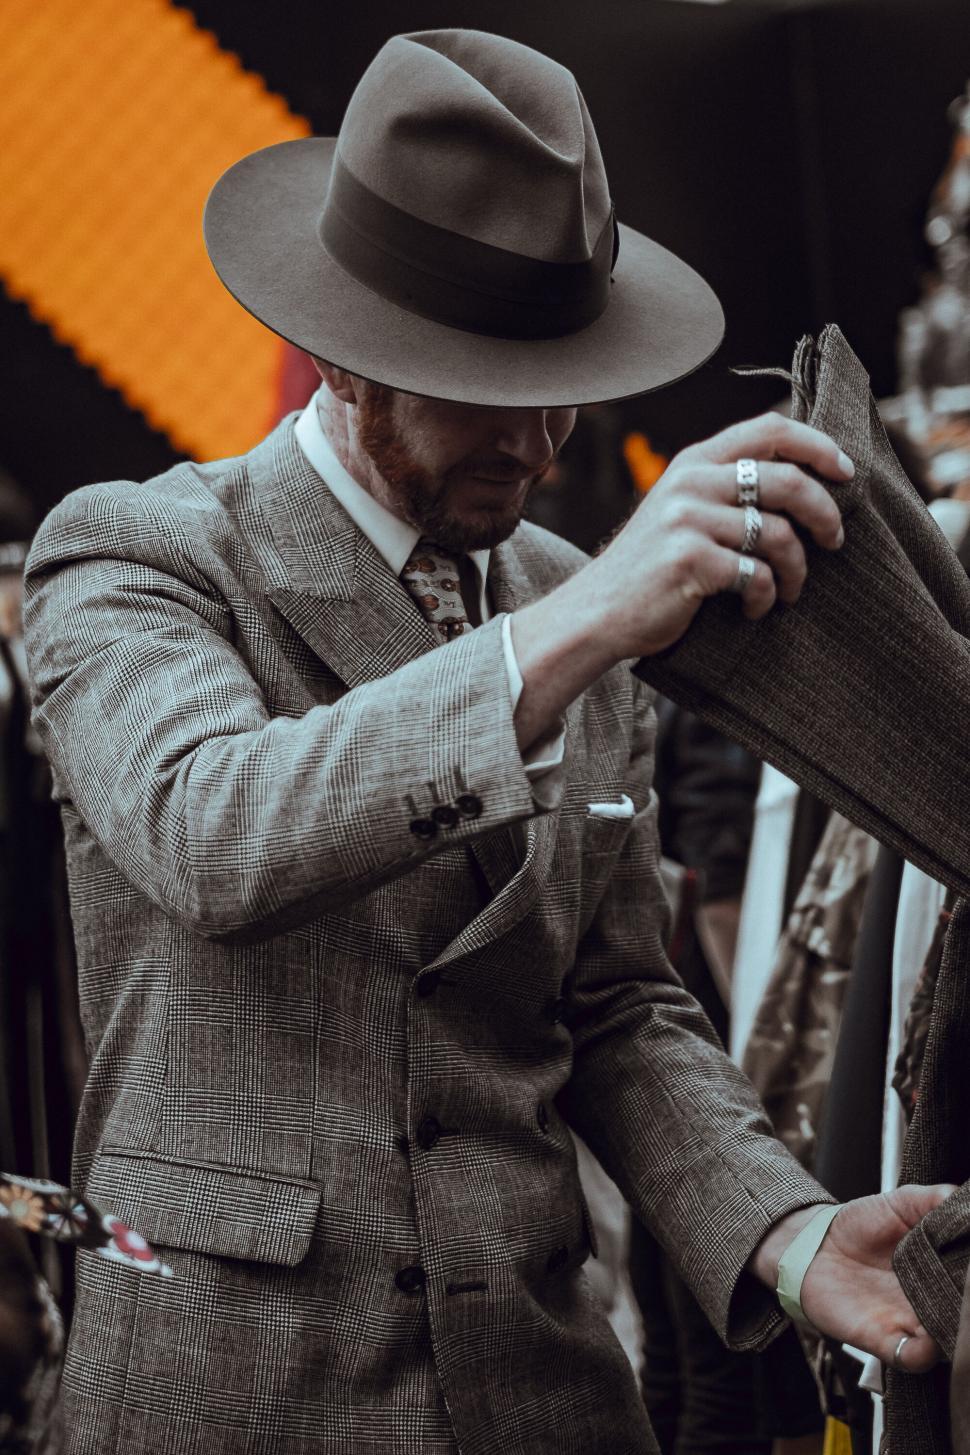 Free Image of Vintage style man examining fabric 